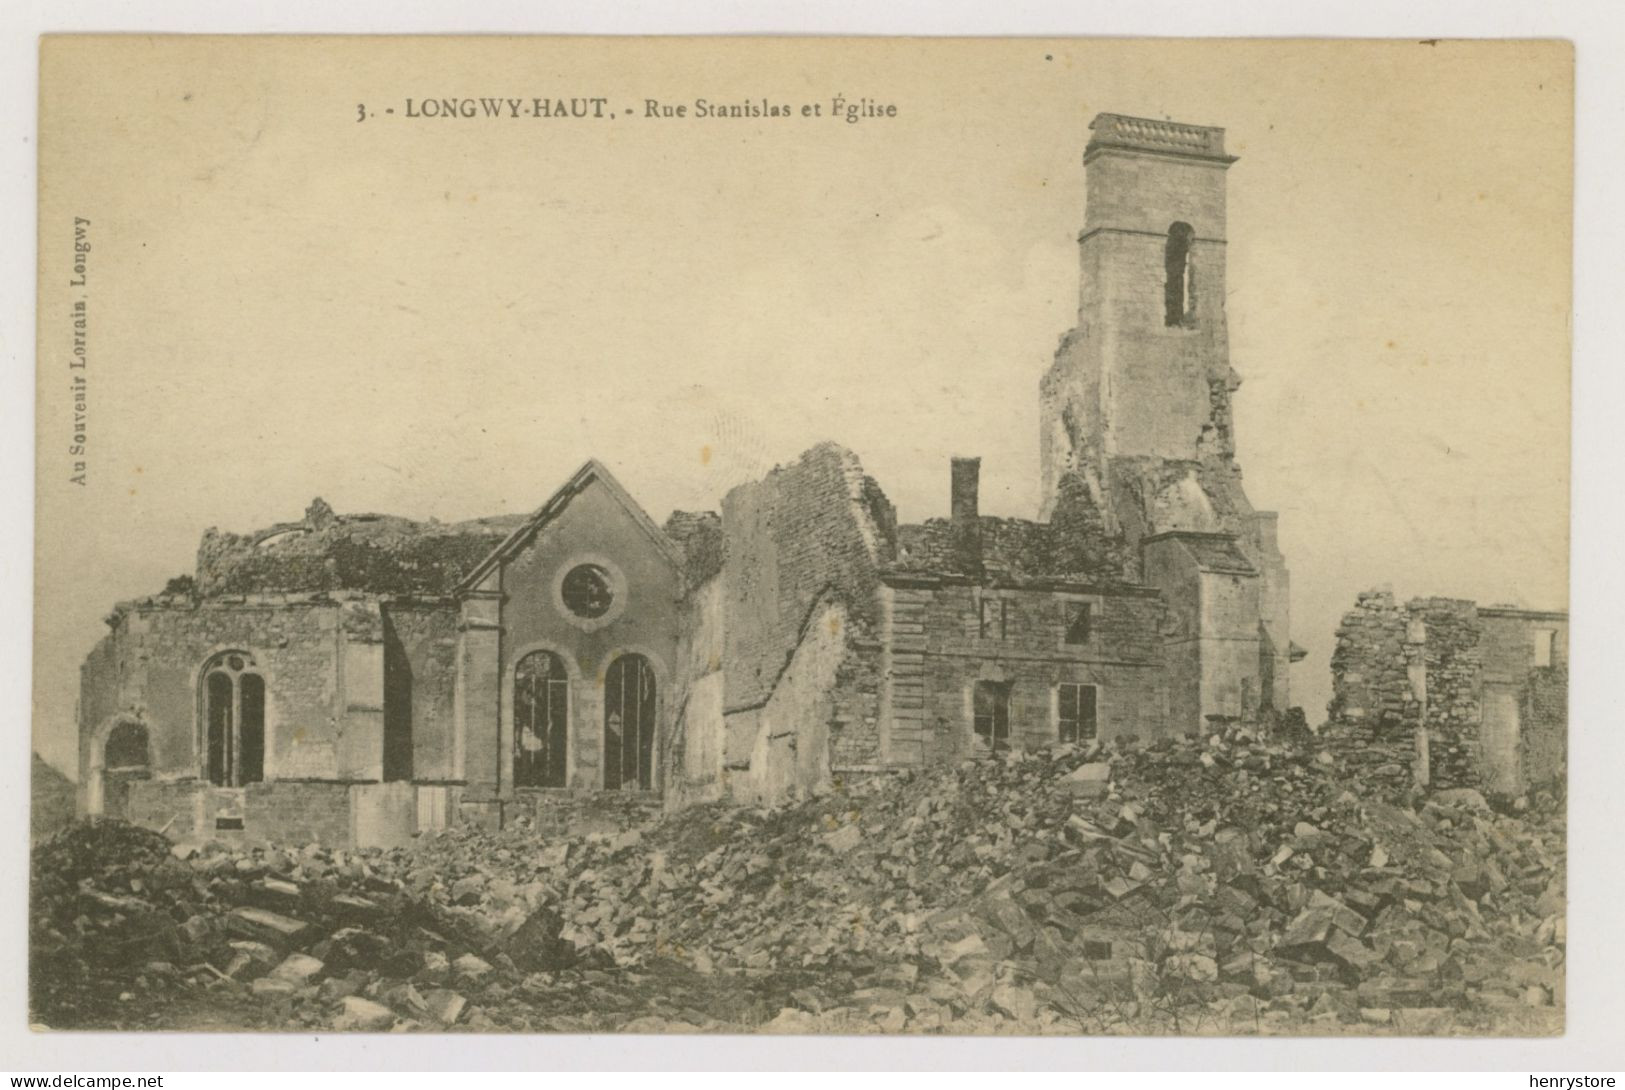 LONGWY-HAUT : Rue Stanislas Et L'Eglise, 1919 - Guerre 14-18 (F7687) - Longwy